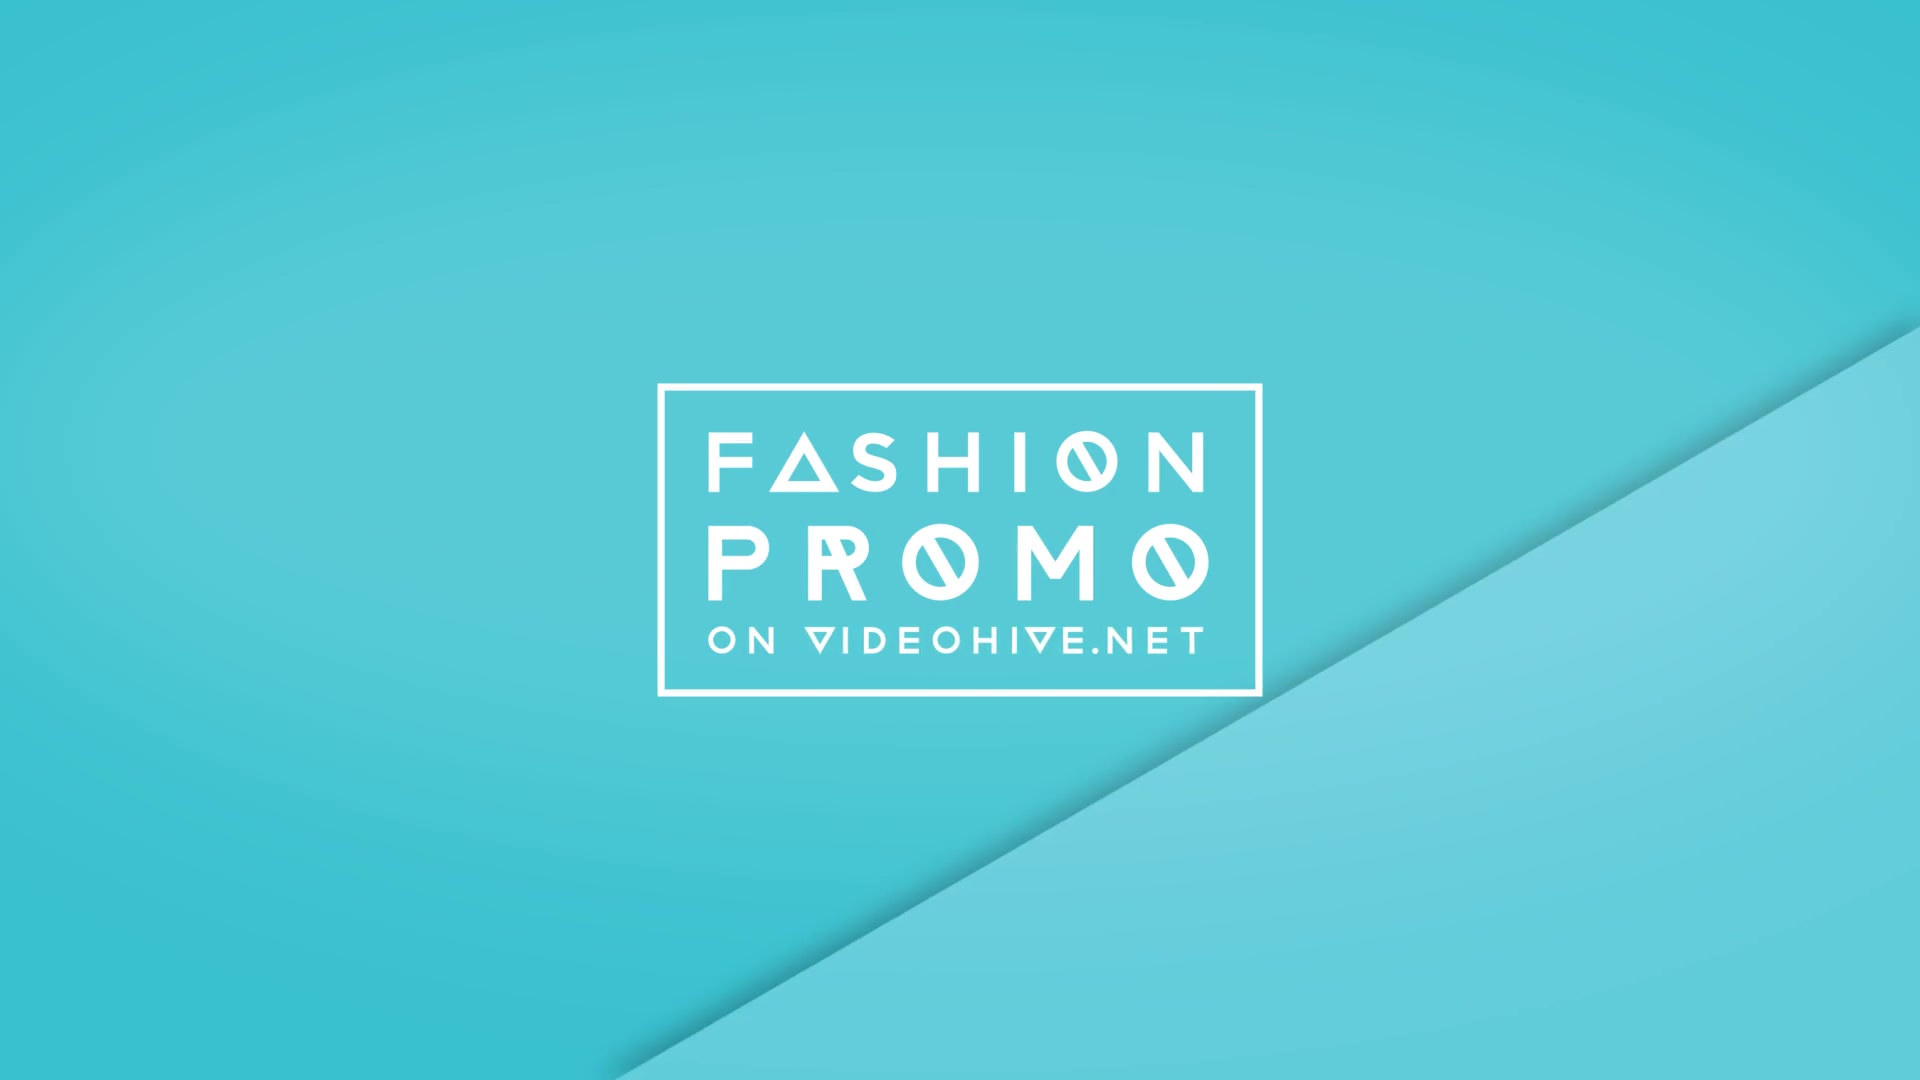 Fashion Promo - Download Videohive 16429854